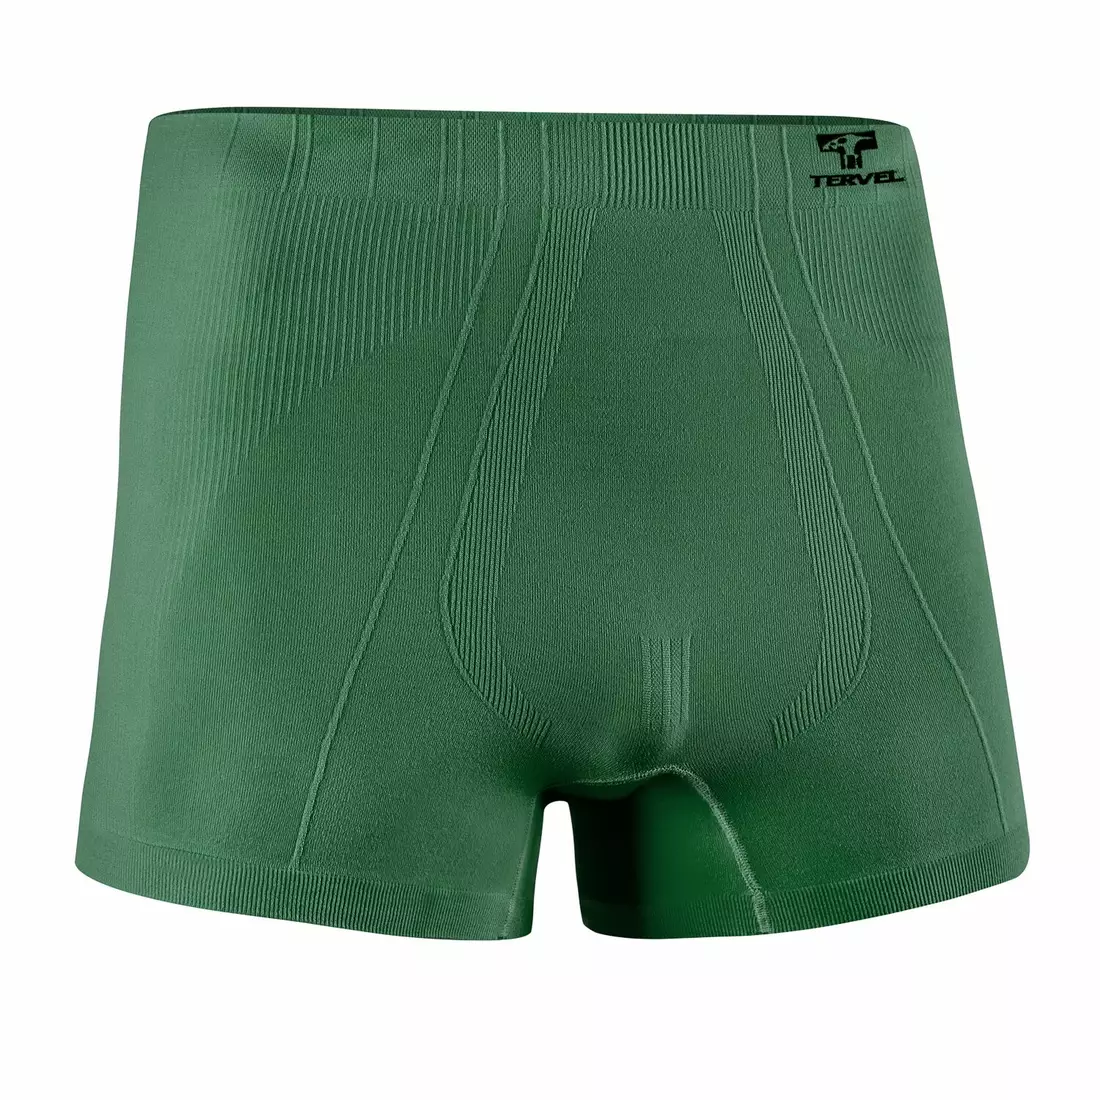 TERVEL - COMFORTLINE 3302 - pánské boxerky, barva: Military (zelená)